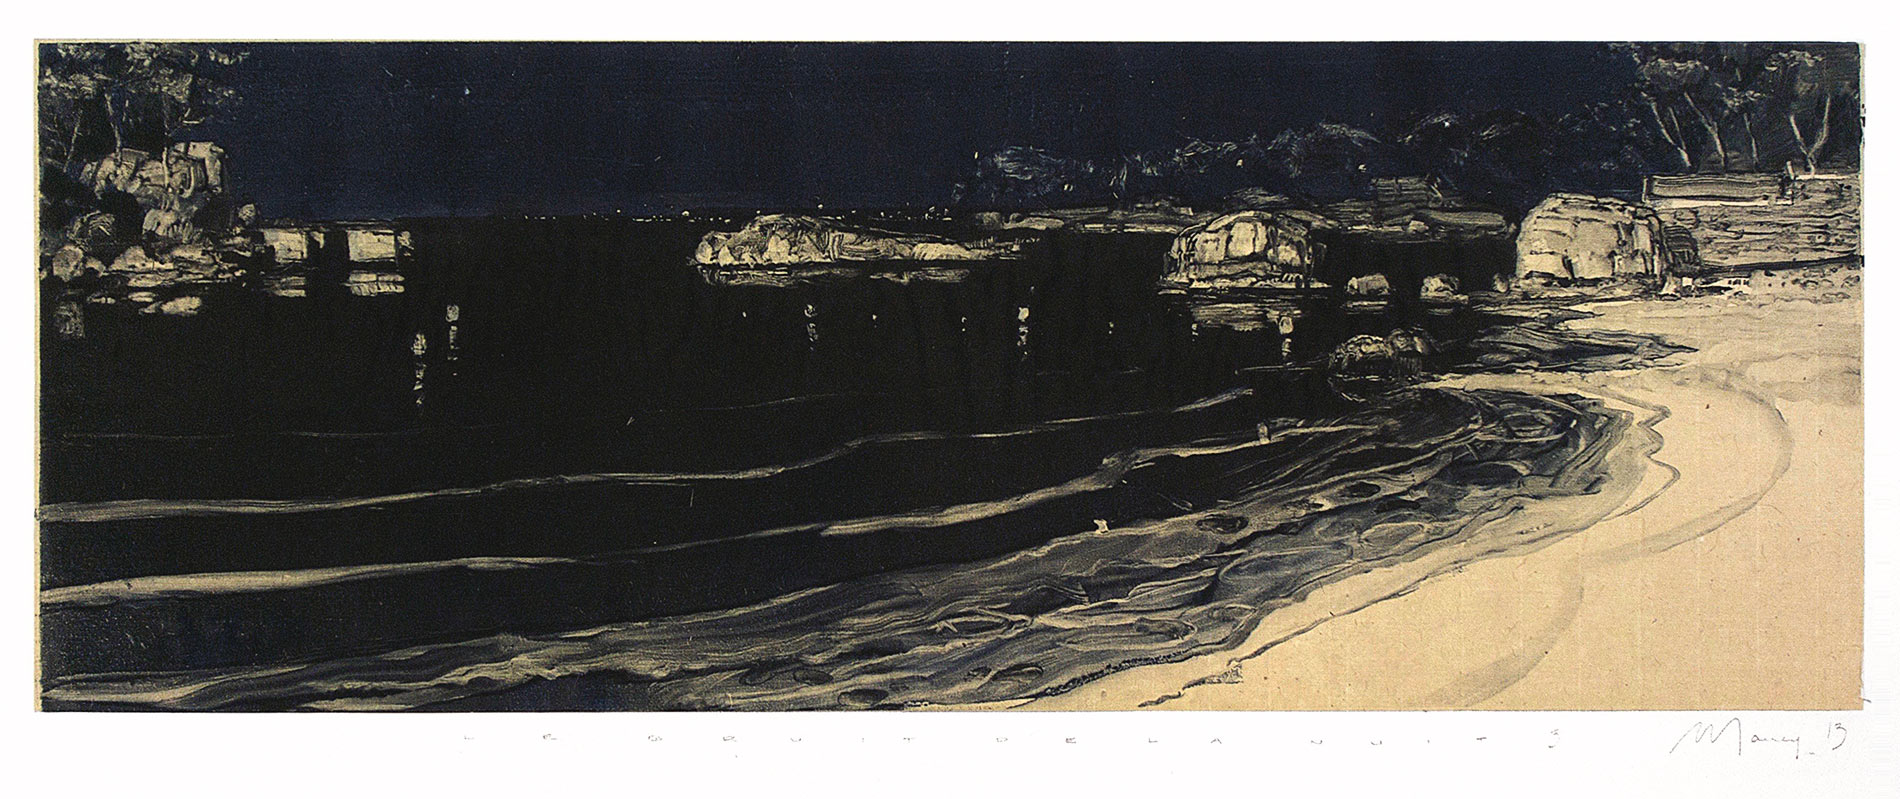 Le bruit de la nuit 5. Monotype, 20 x 55,5 cm, 2013